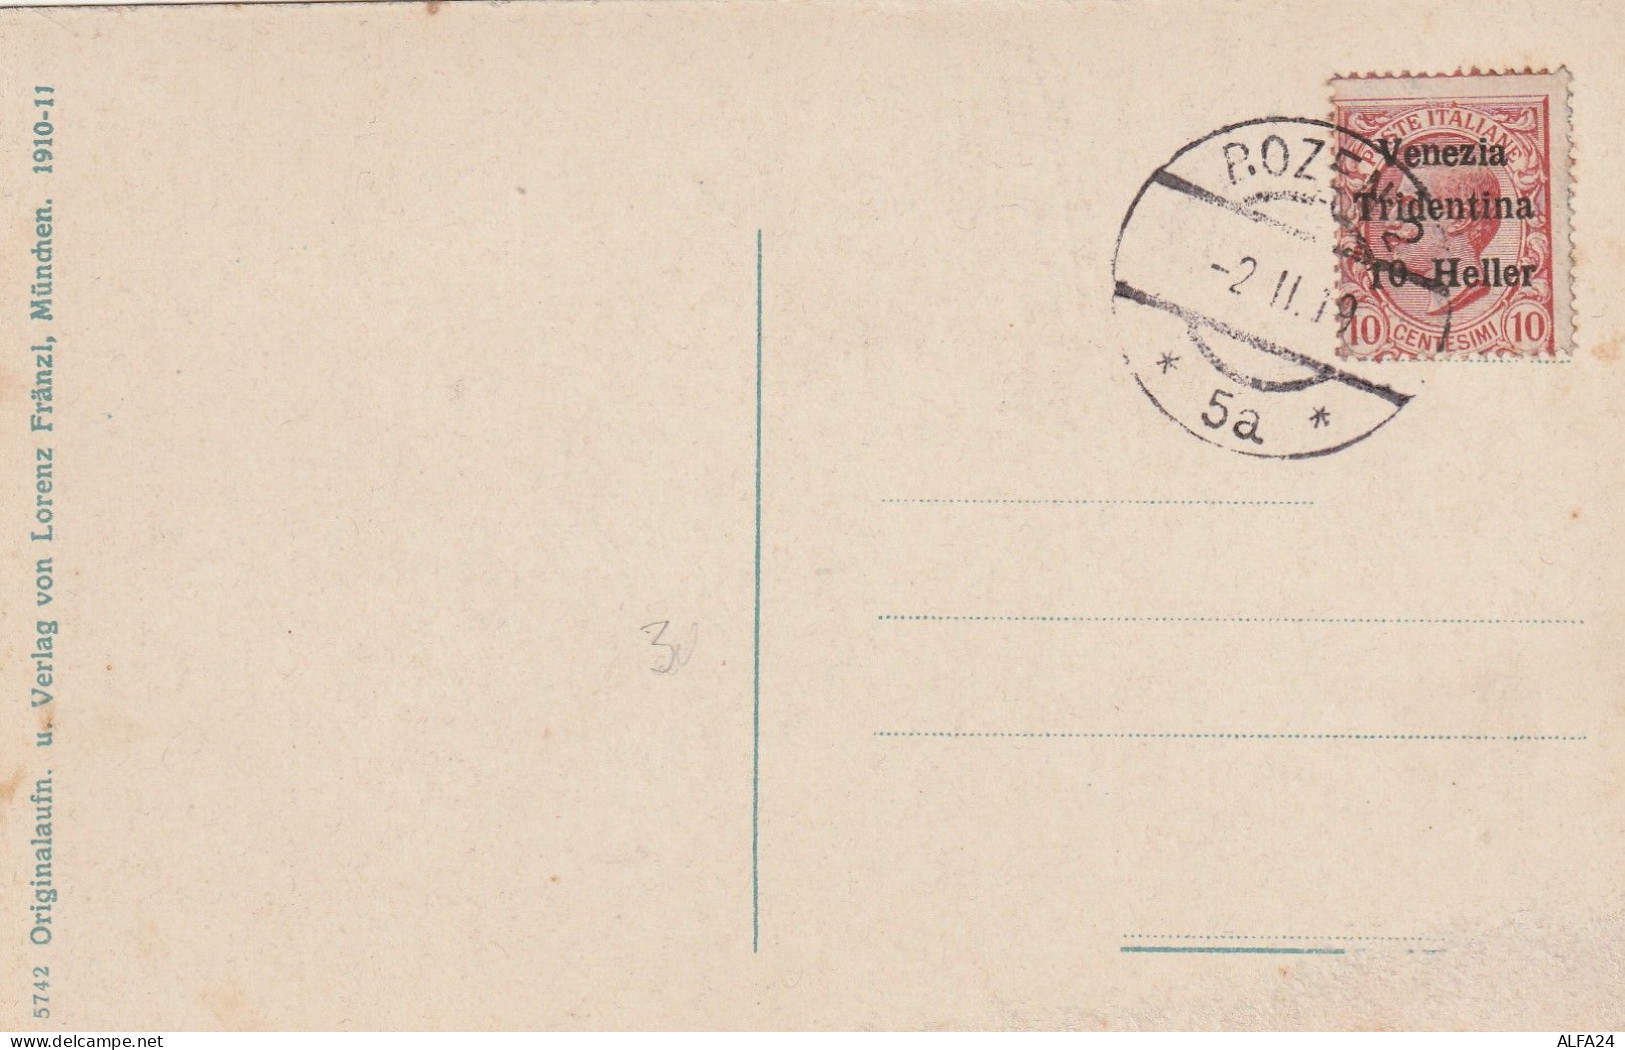 CARTOLINA 1919 10 C. VENEZIA TRIDENTINA 10 HELLER TIMBRO BOZEN (ZP3574 - Ocupación Austriaca